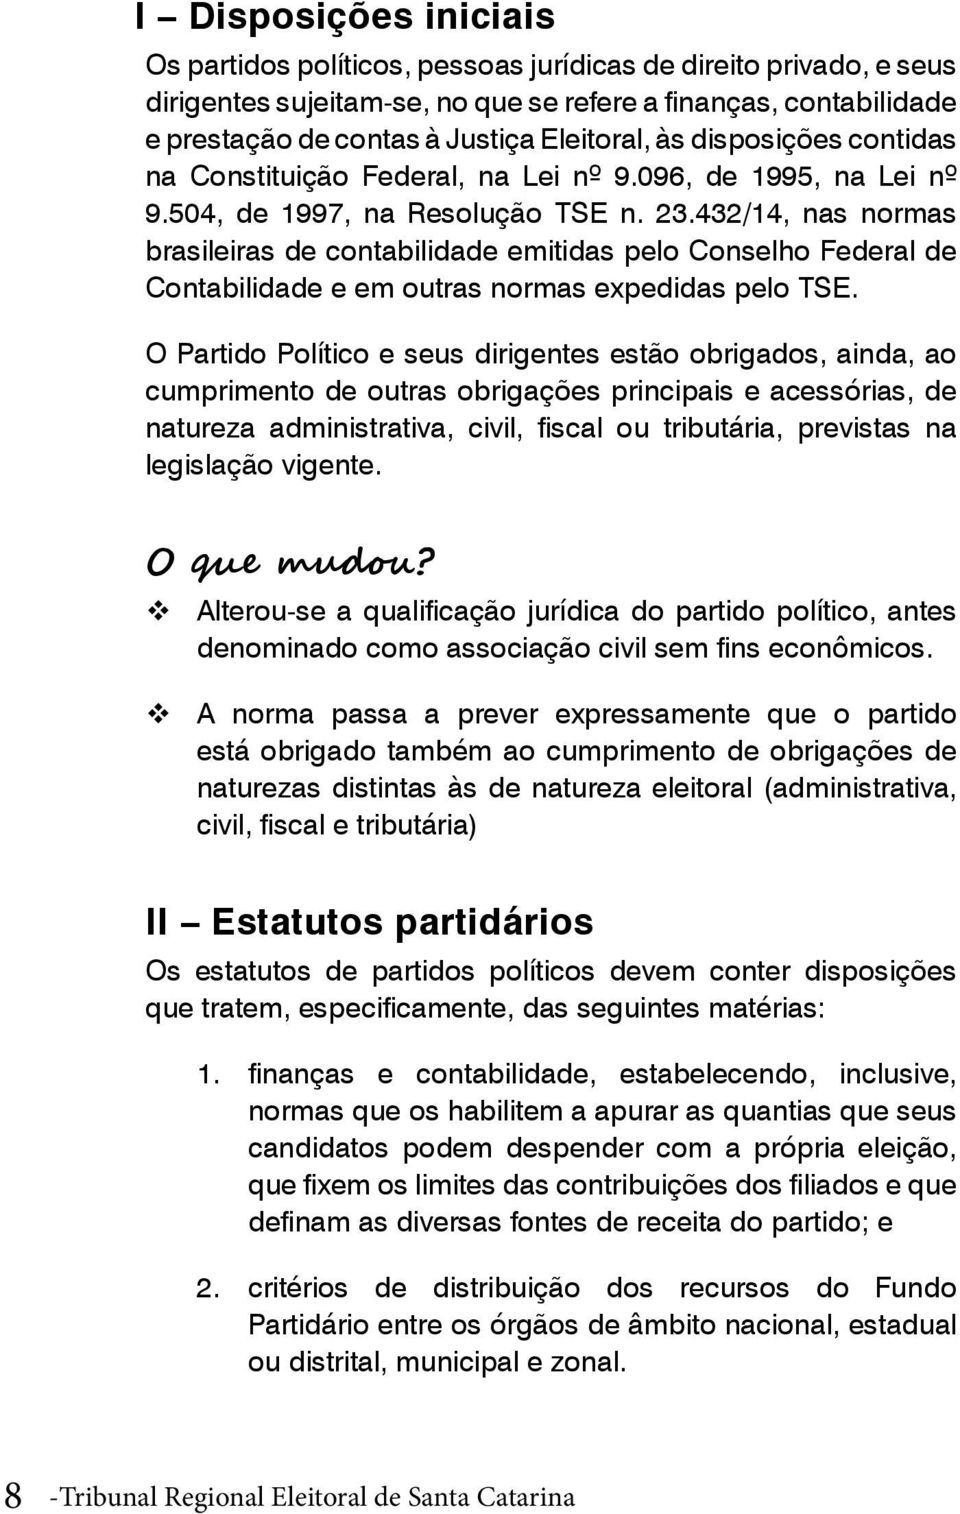 432/14, nas normas brasileiras de contabilidade emitidas pelo Conselho Federal de Contabilidade e em outras normas expedidas pelo TSE.